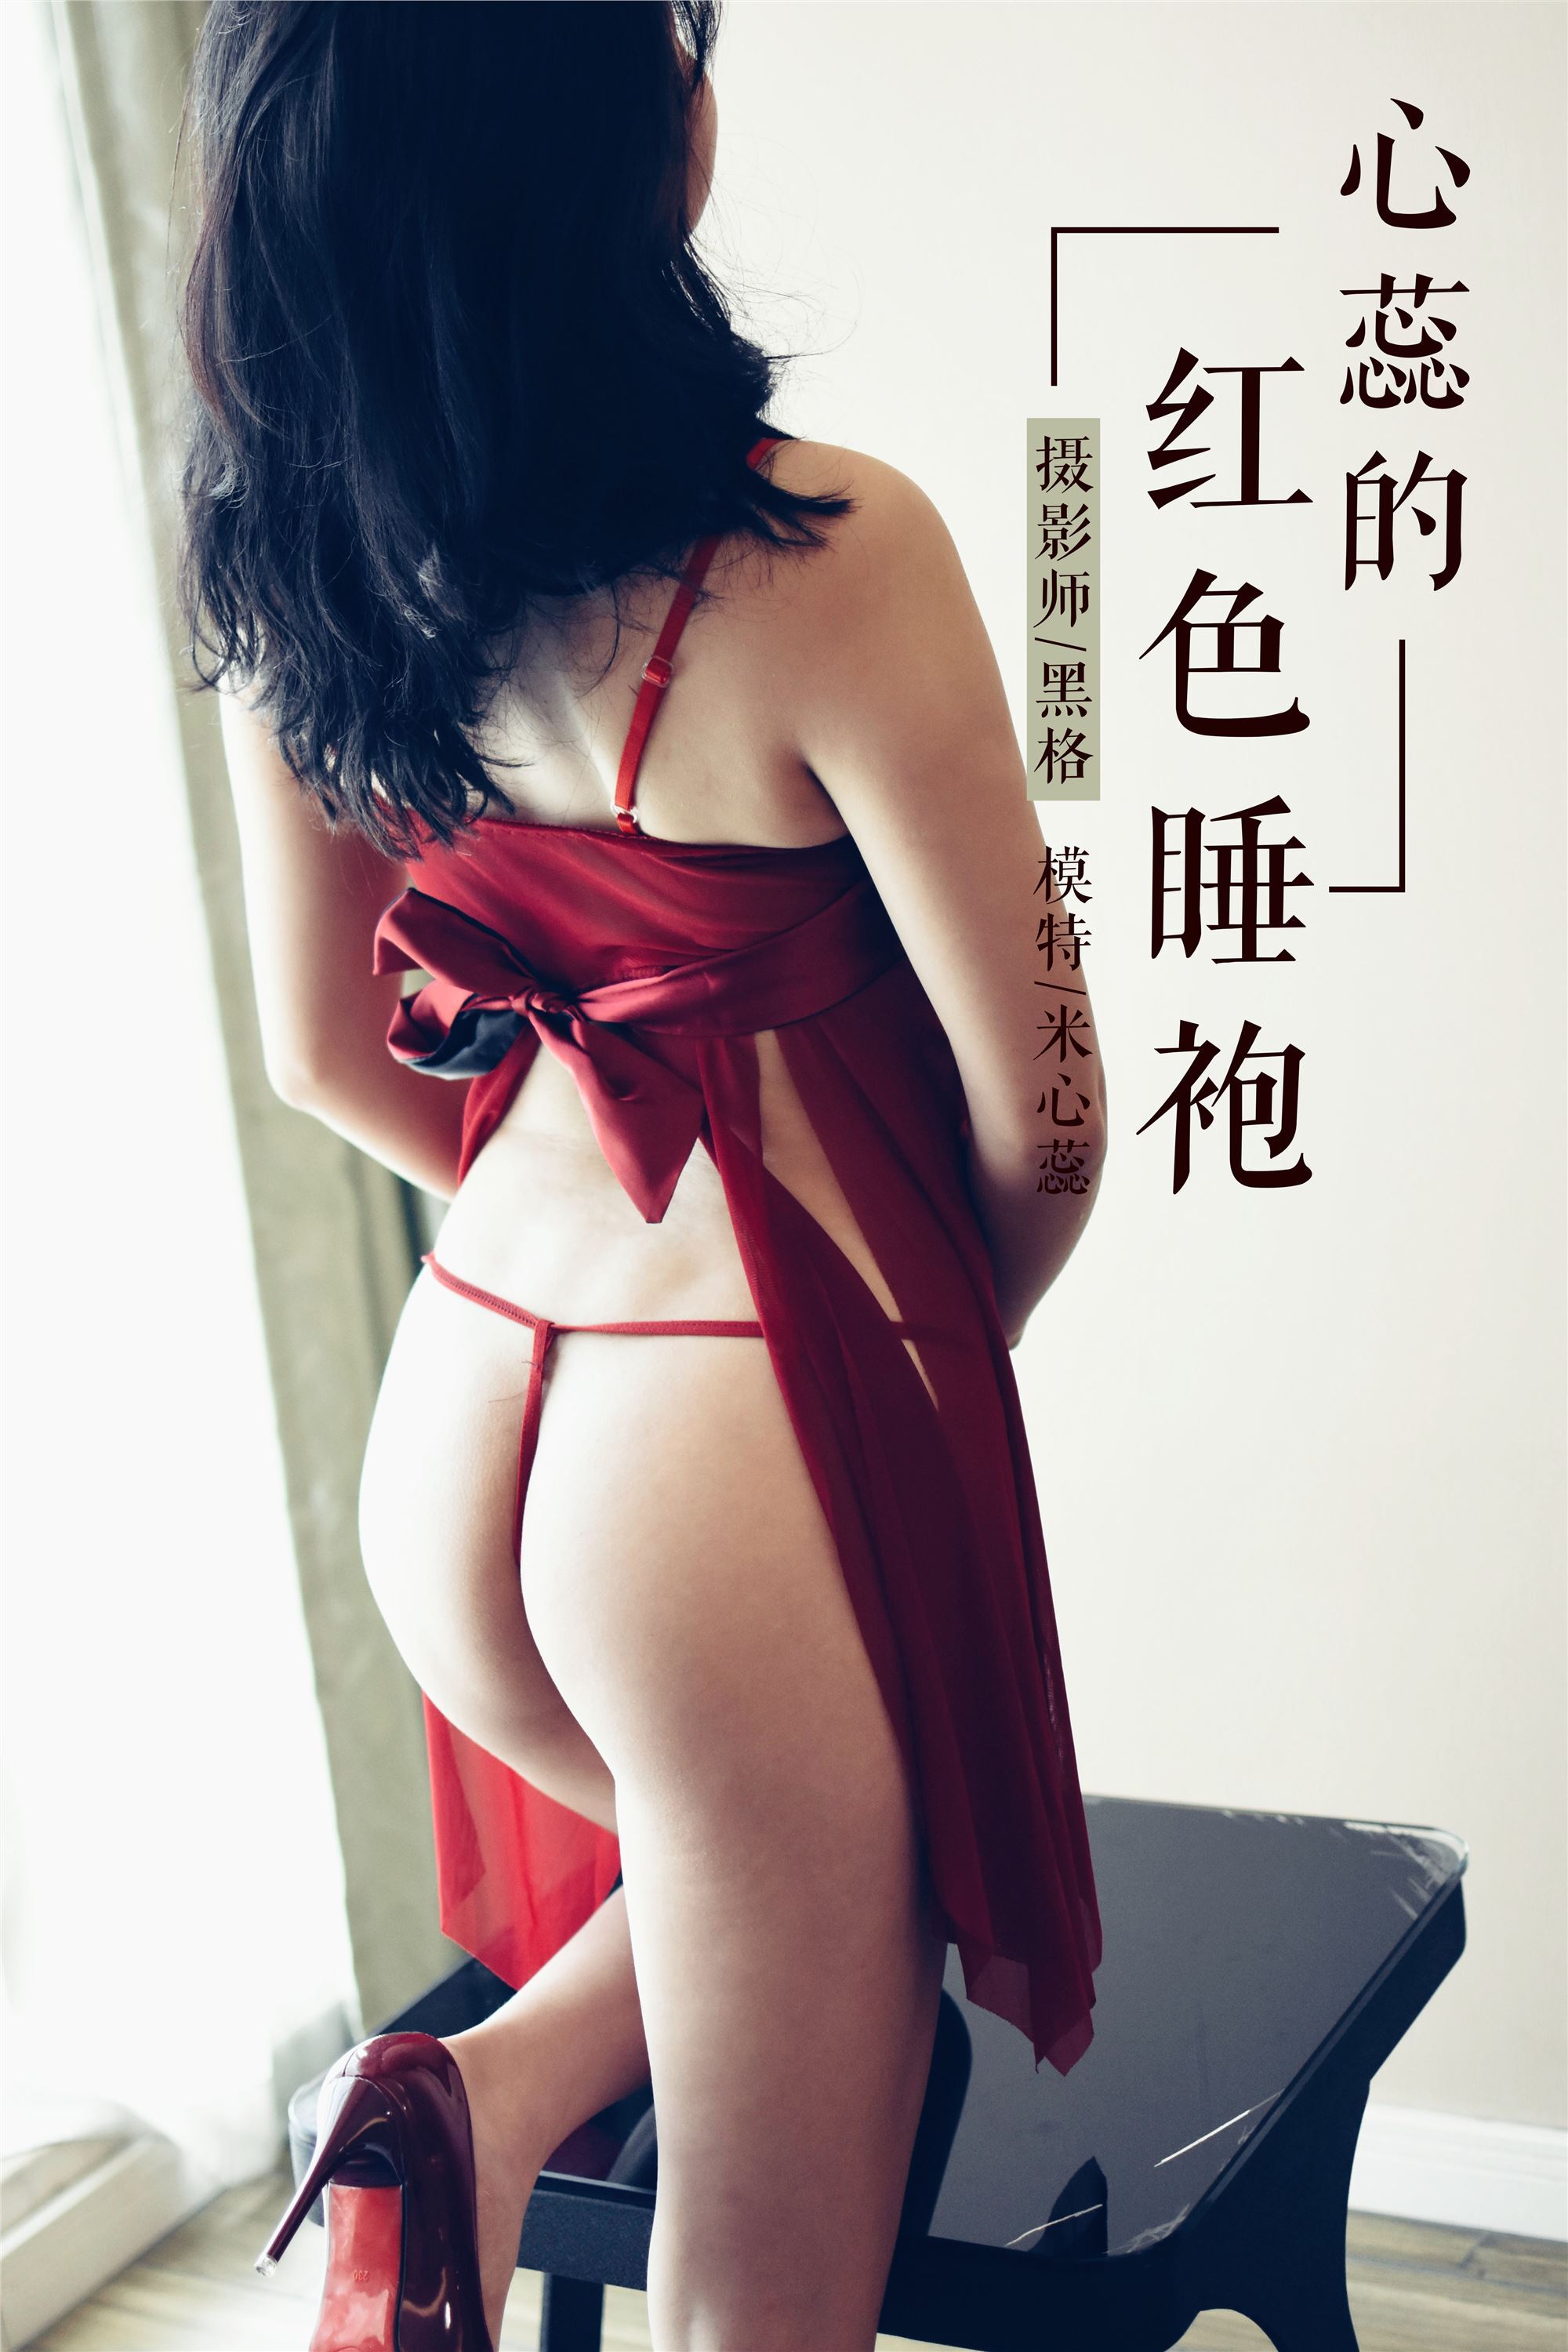 [yalayi yalayi] 2018.11.03 No.014 red robe of Xinrui rice Xinrui